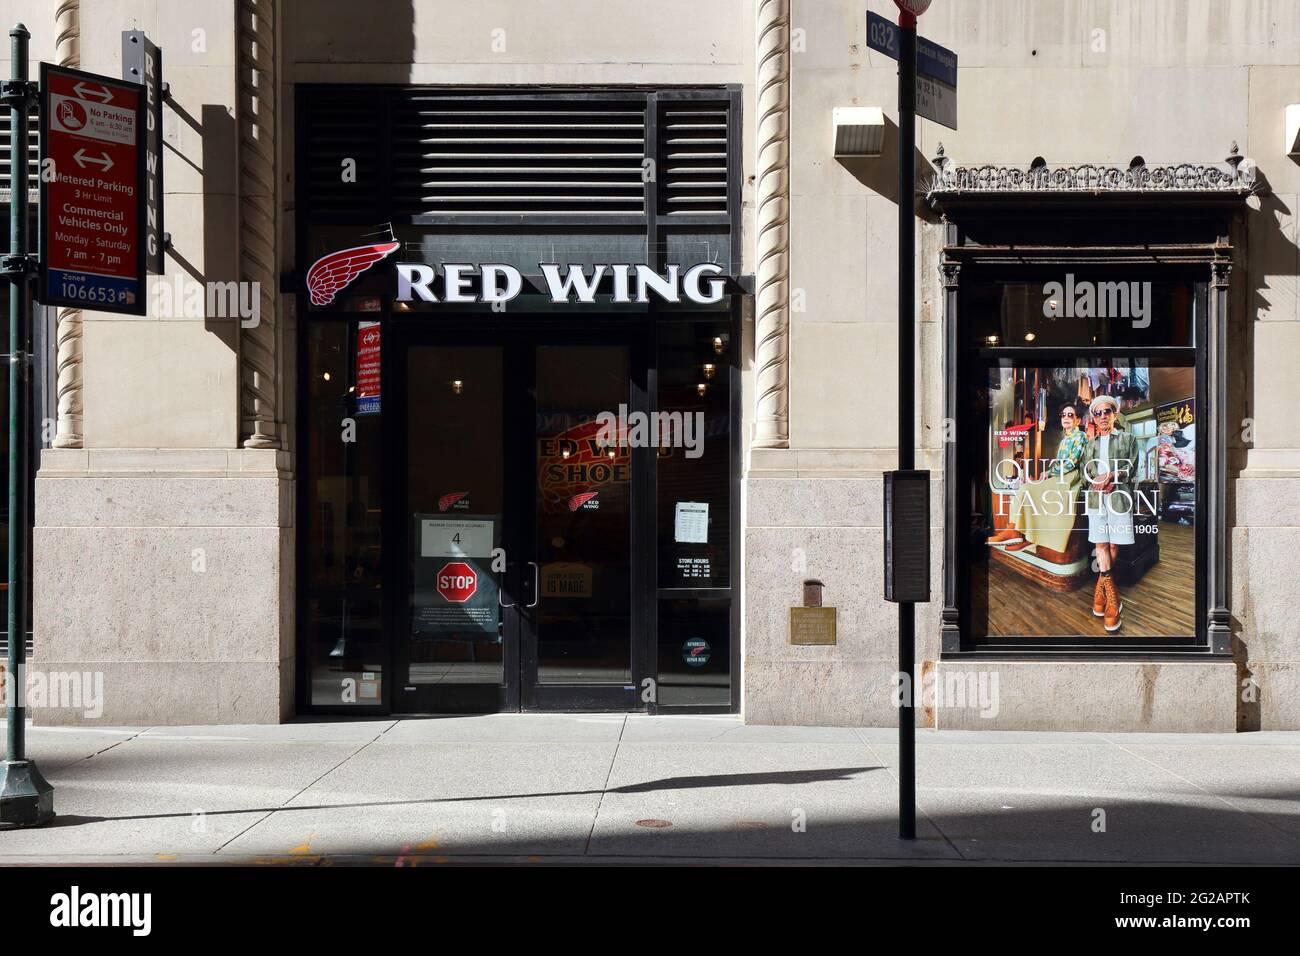 Red Wing, 11 Pennsylvania Plaza, New York, NYC Foto von einem Schuhgeschäft in Midtown Manhattan. Stockfoto